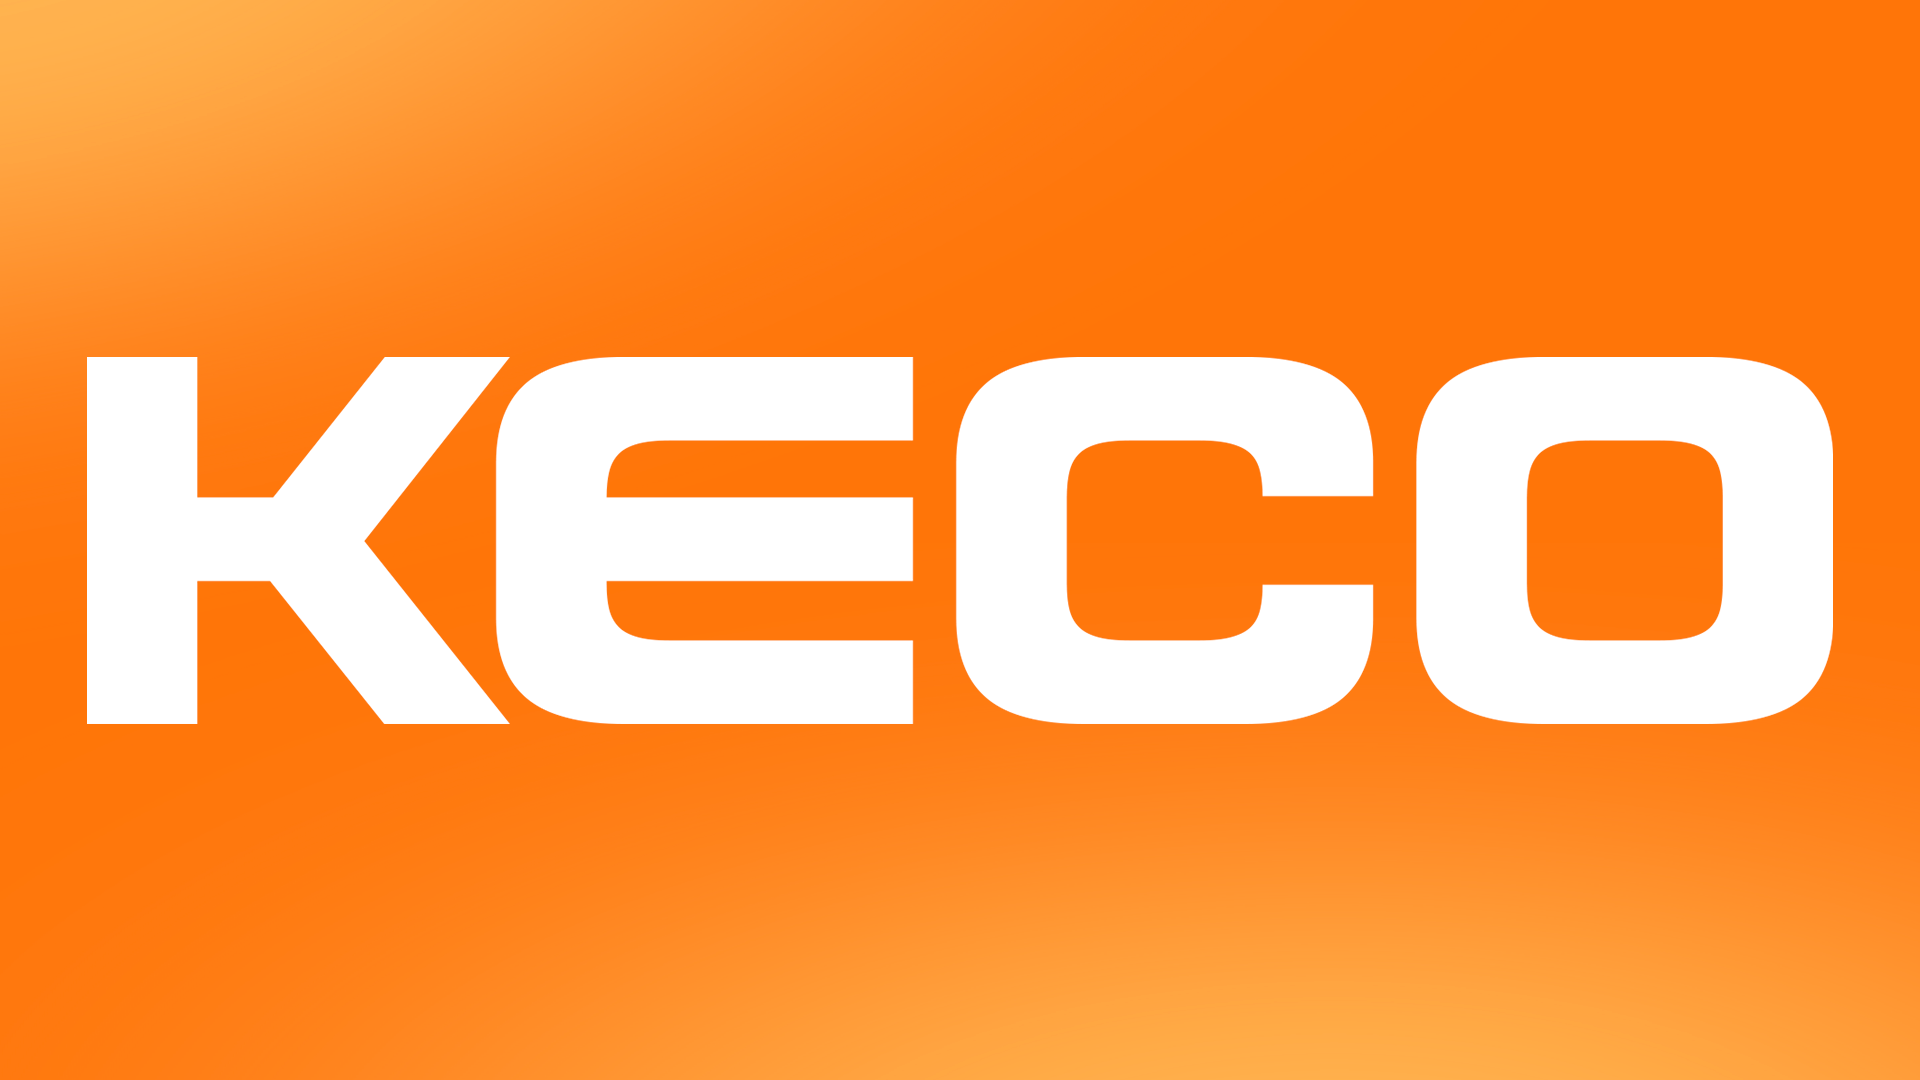 Conheça a Keco, nova parceira da Alutal no segmento de analítica para processos.